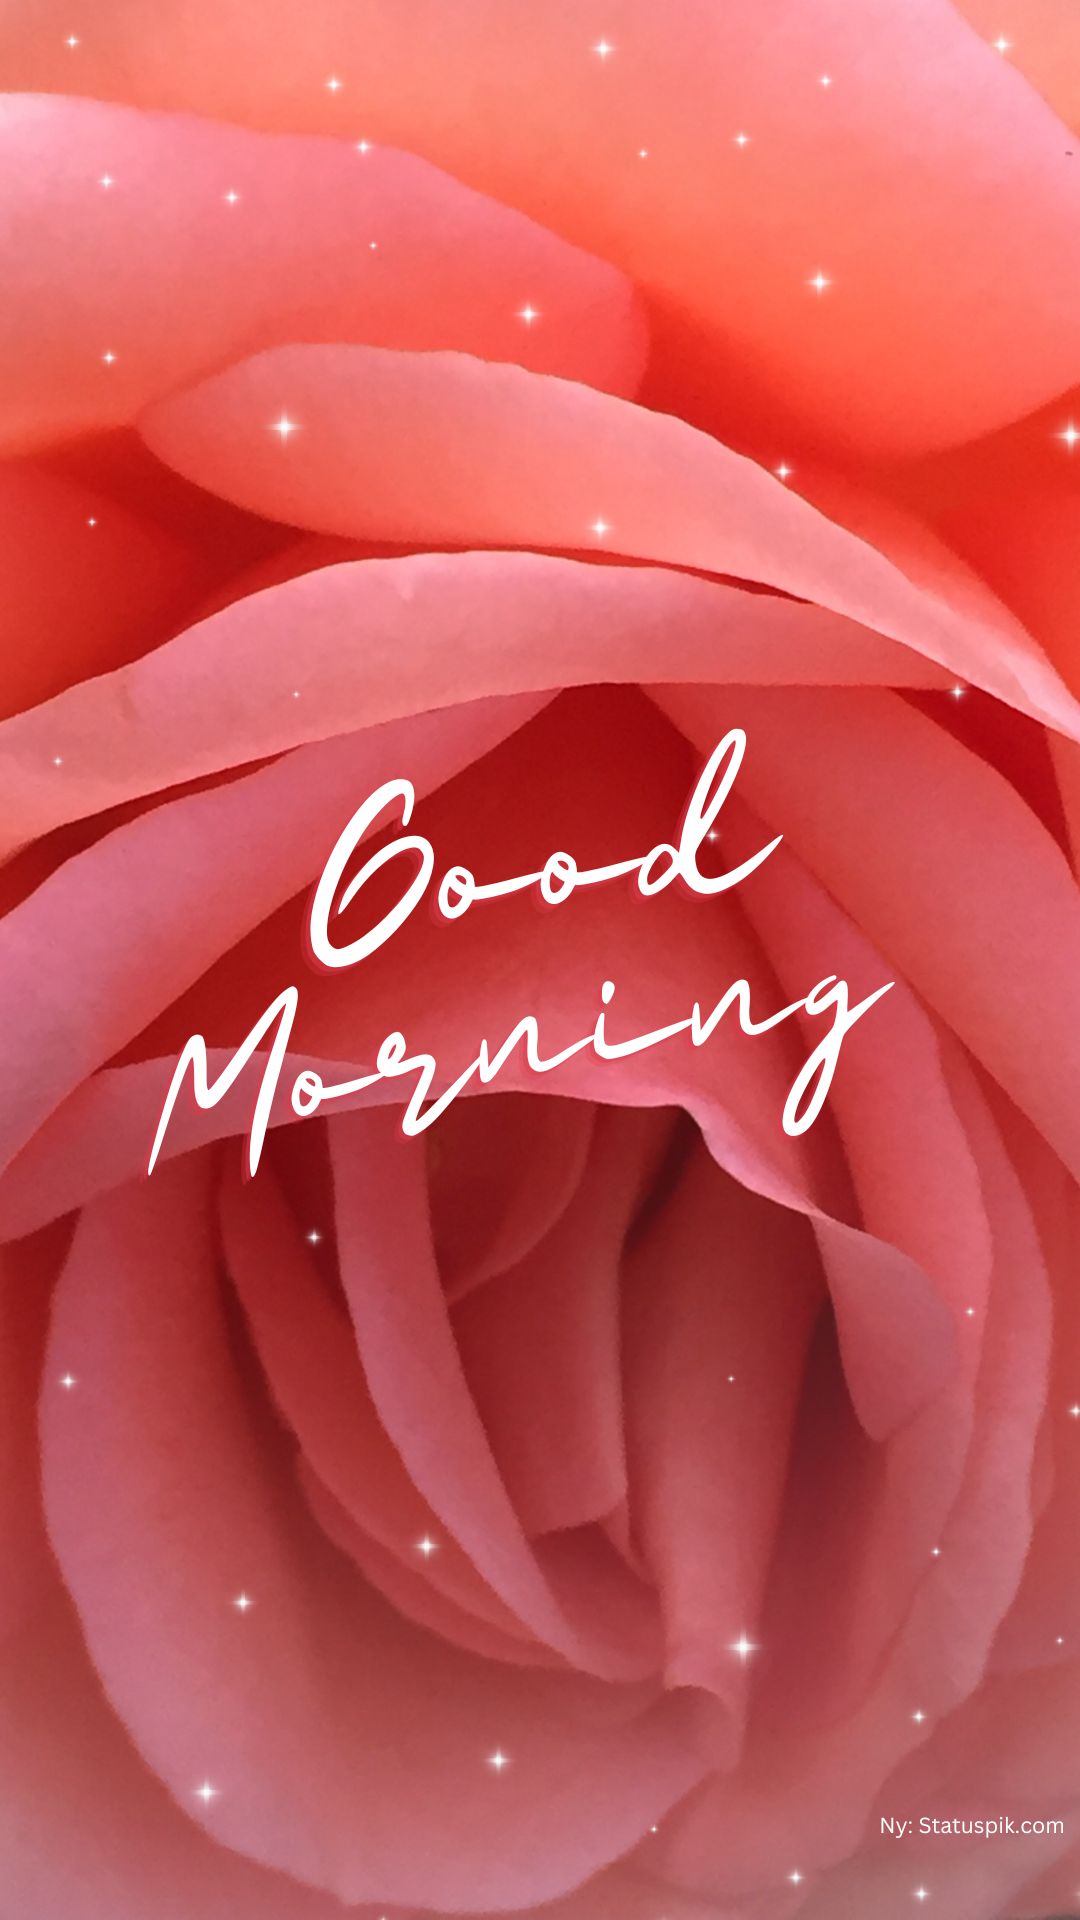 Good Morning Red Rose